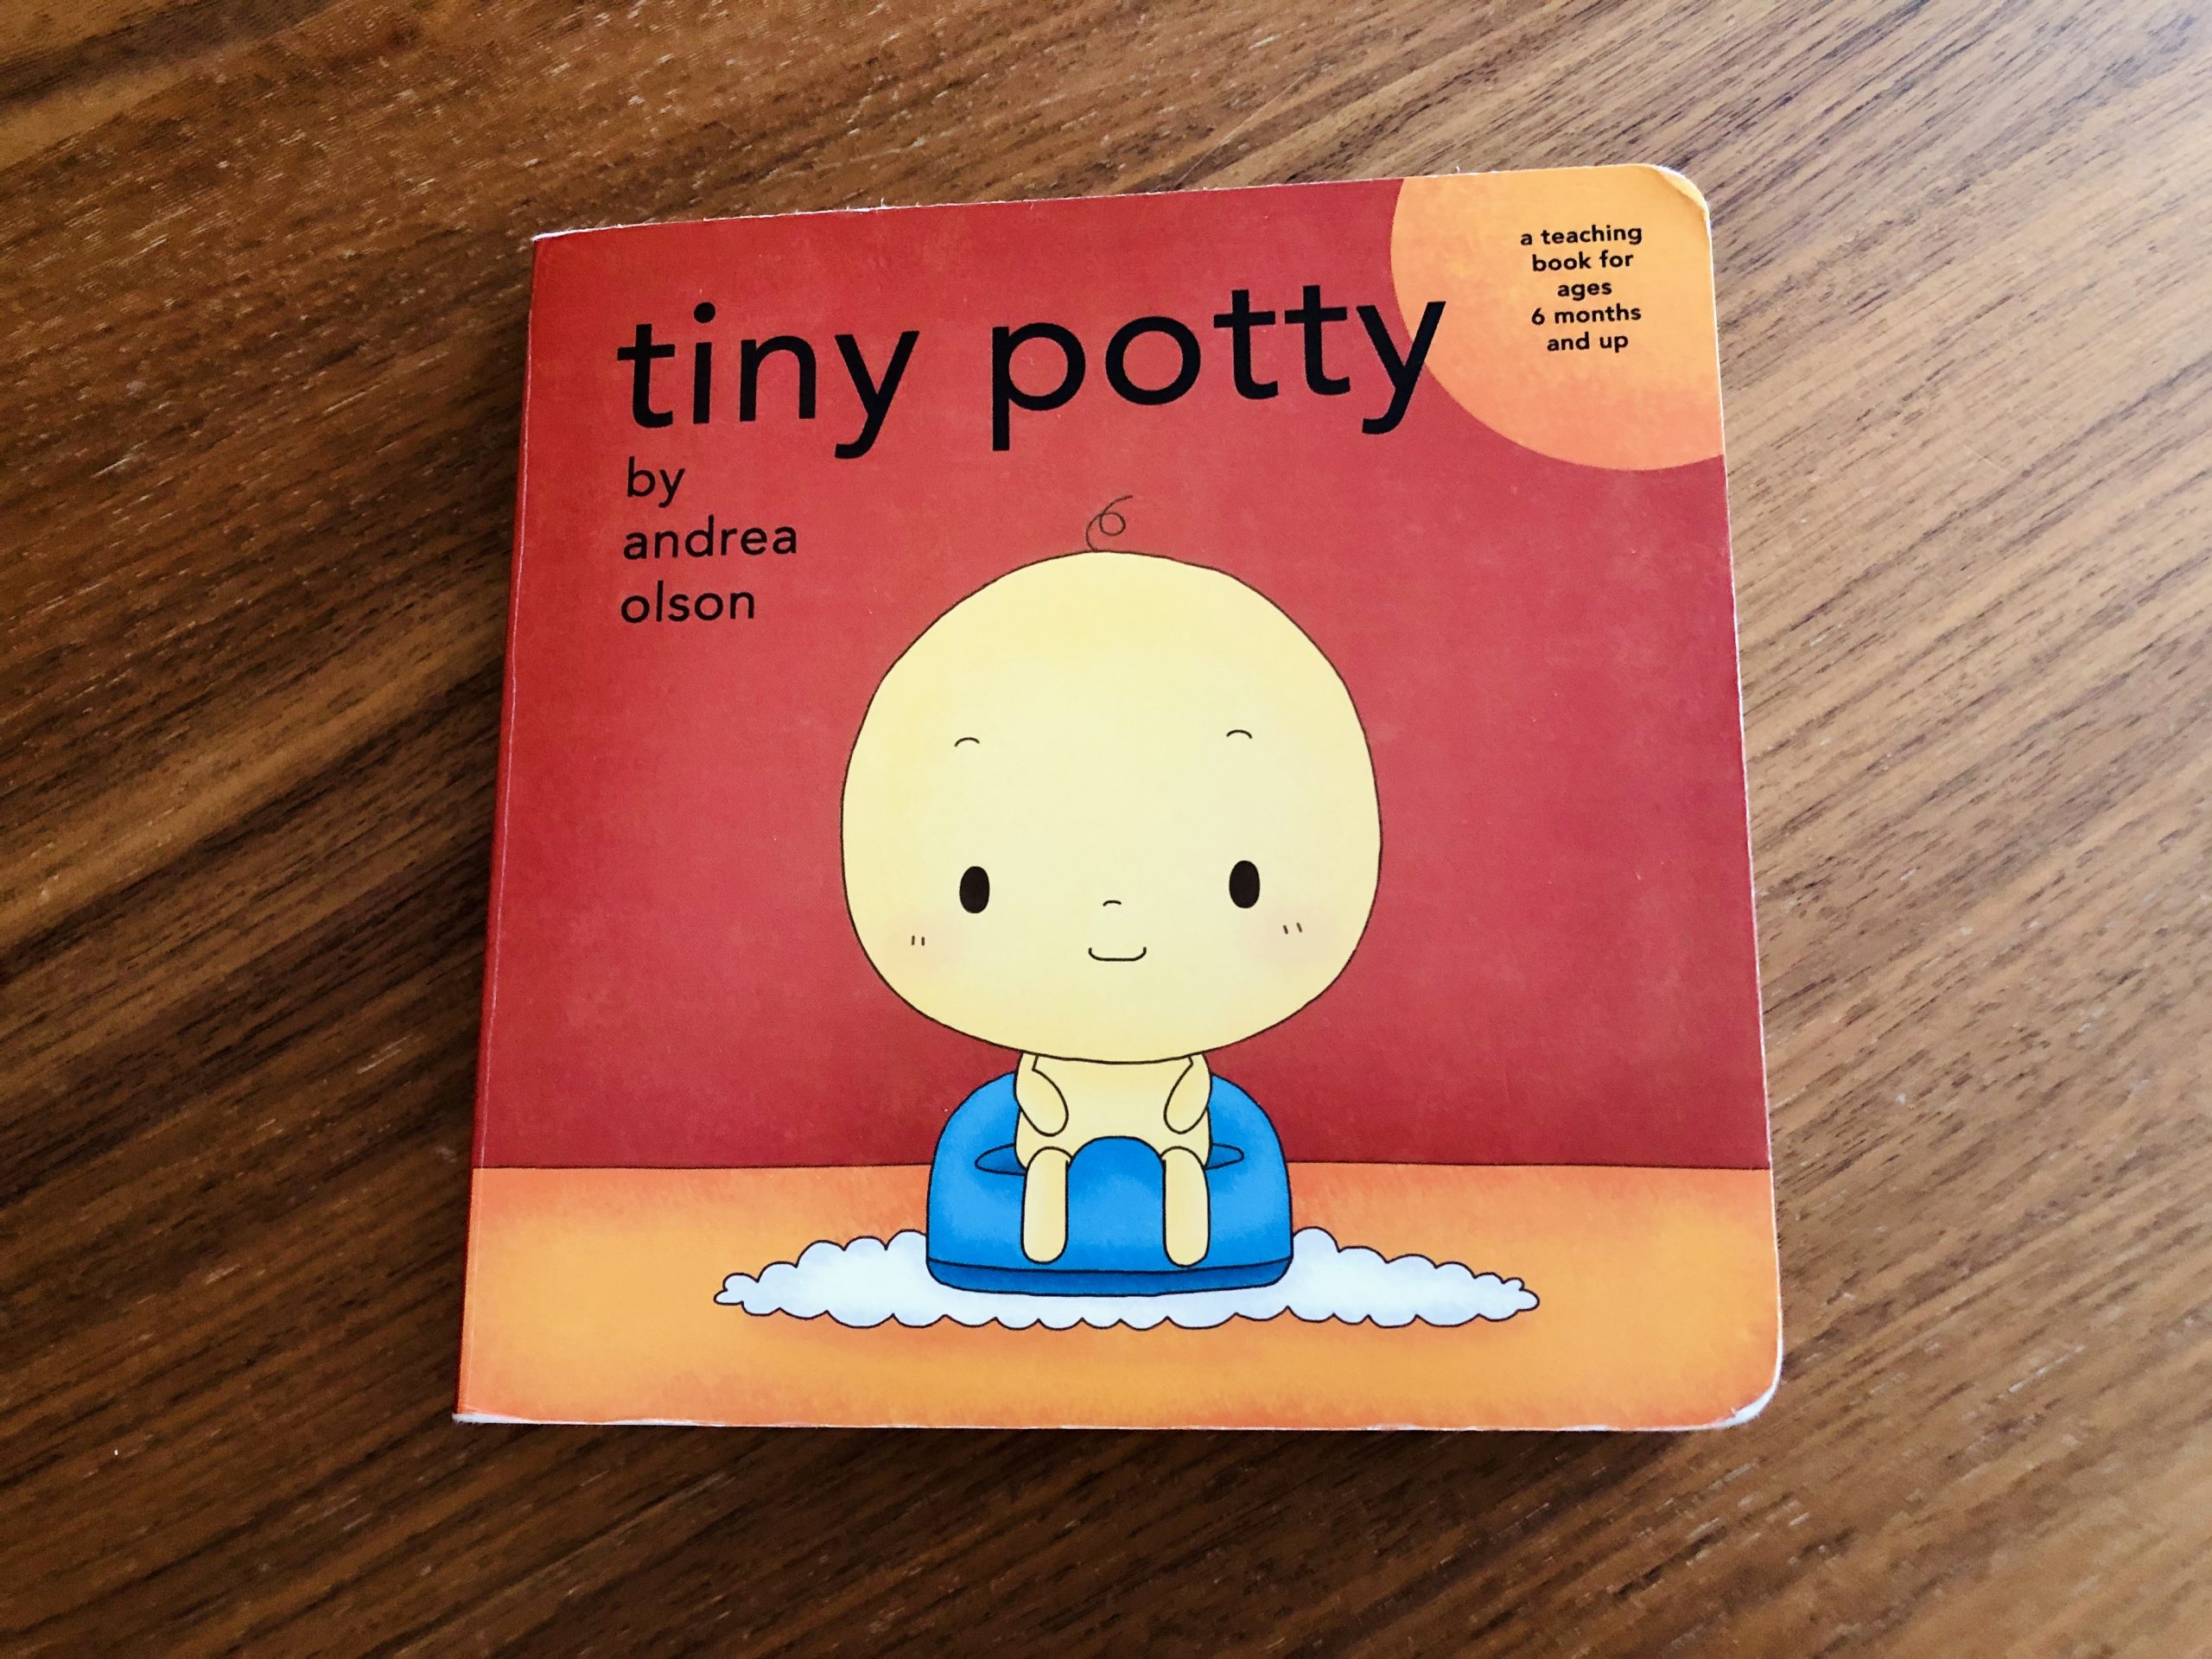 kniha na nocnik Tiny potty